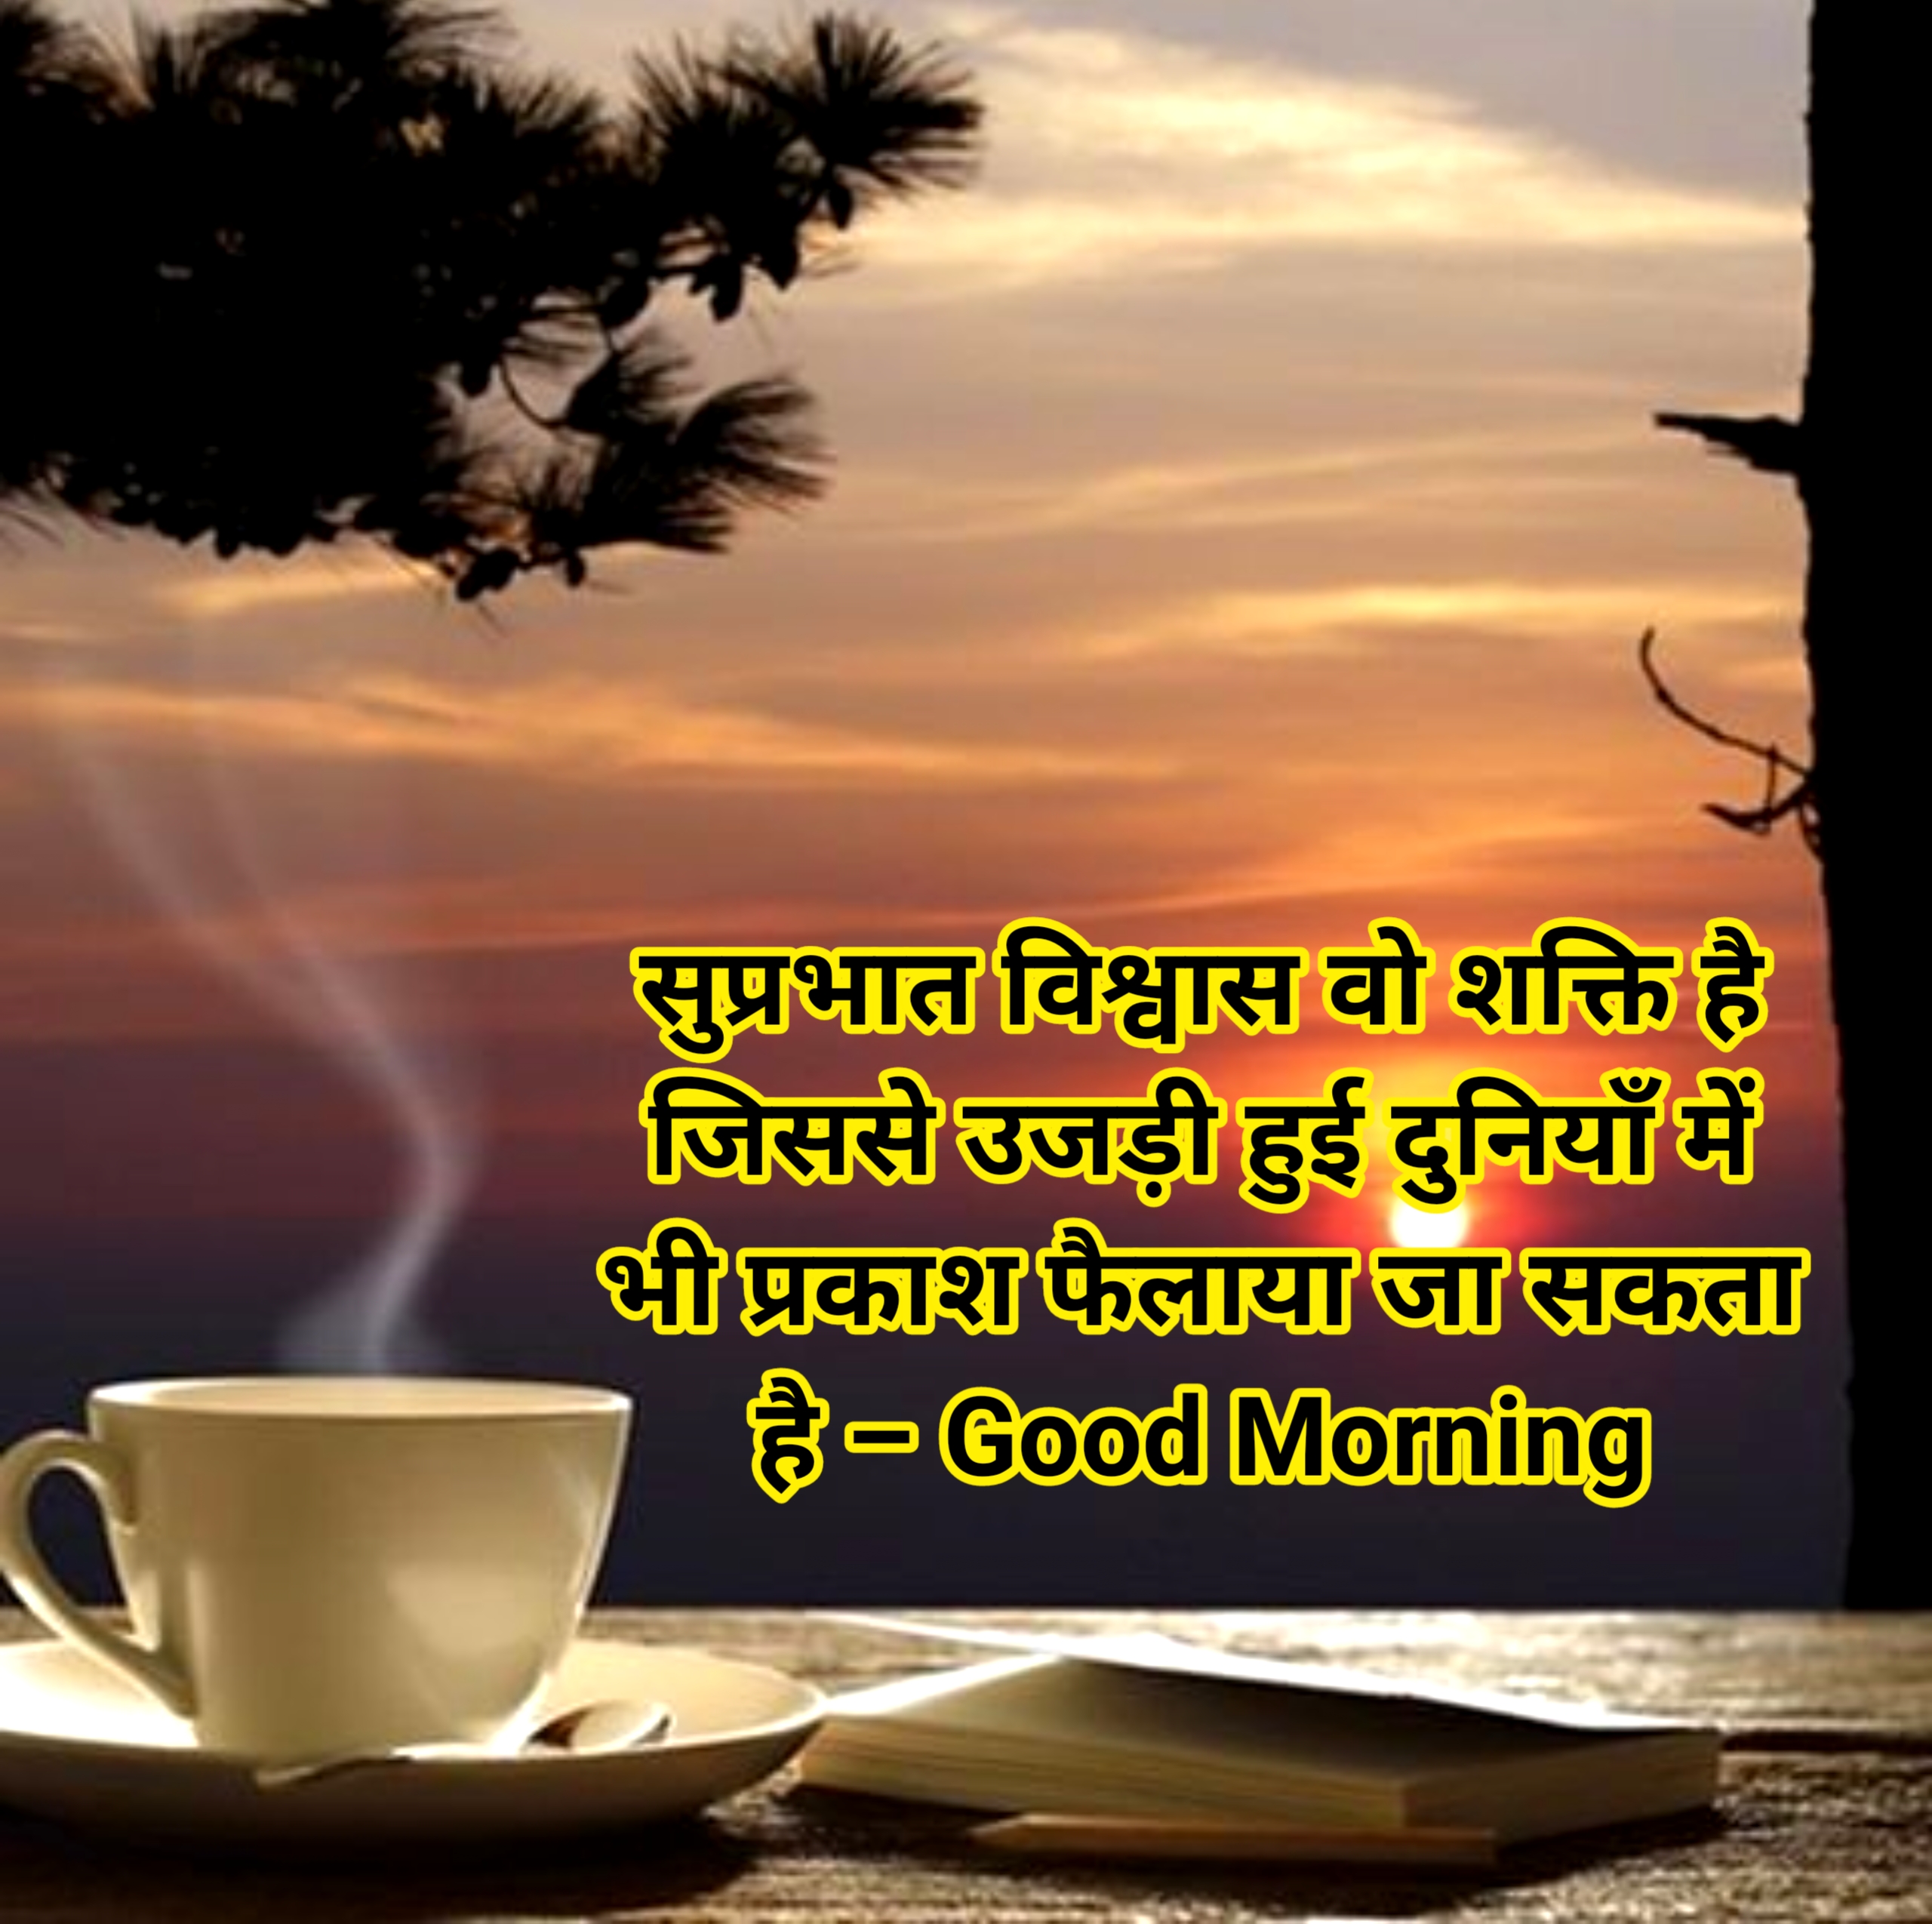 Top 100 + Good morning quotes in Hindi 2023 | गुड मॉर्निंग कोट्स इन हिंदी,good morning quotes in hindi motivational,पॉजिटिव गुड मॉर्निंग कोट्स,ब्यूटीफुल गुड मॉर्निंग कोट्स,टॉप गुड मॉर्निंग कोट्स,गुड मॉर्निंग कोट्स इन हिंदी फॉर व्हाट्सएप्प